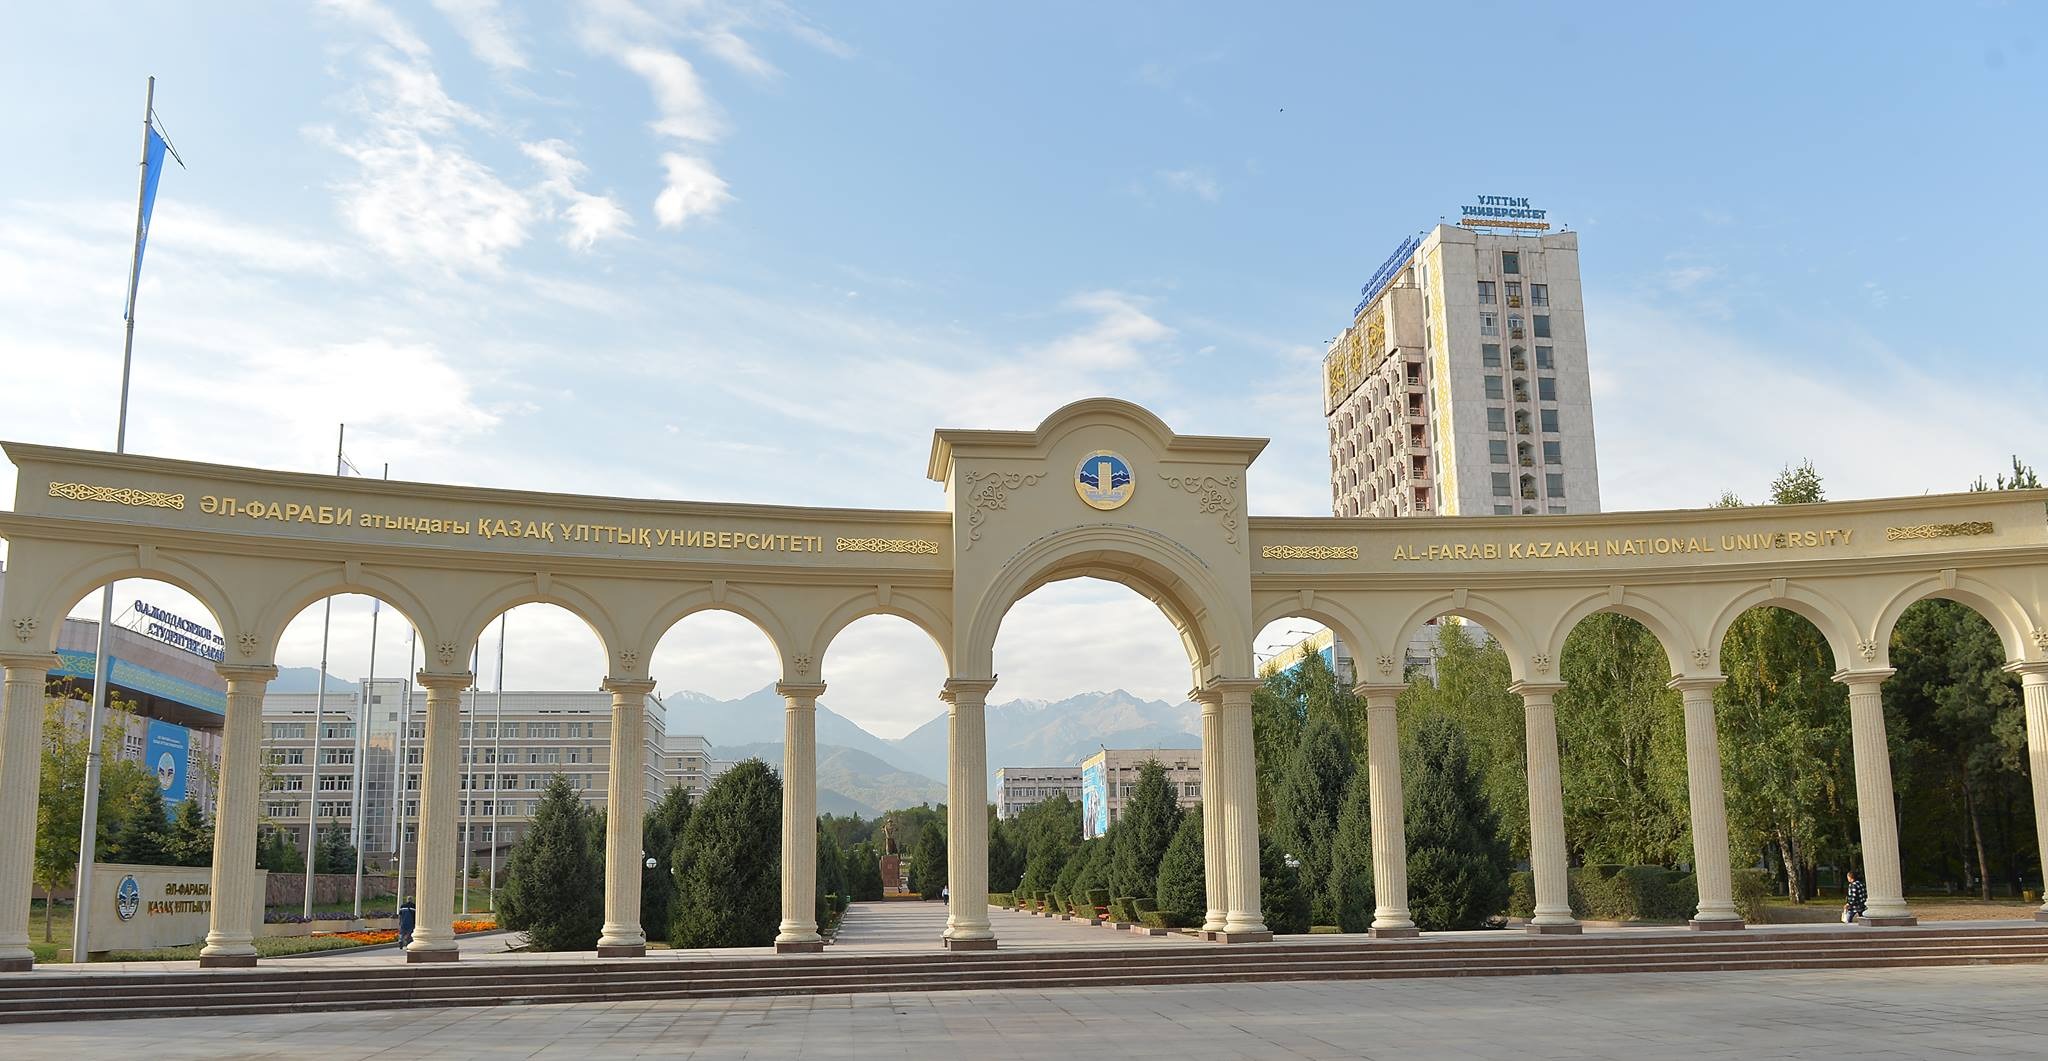 Казахский национальный университет